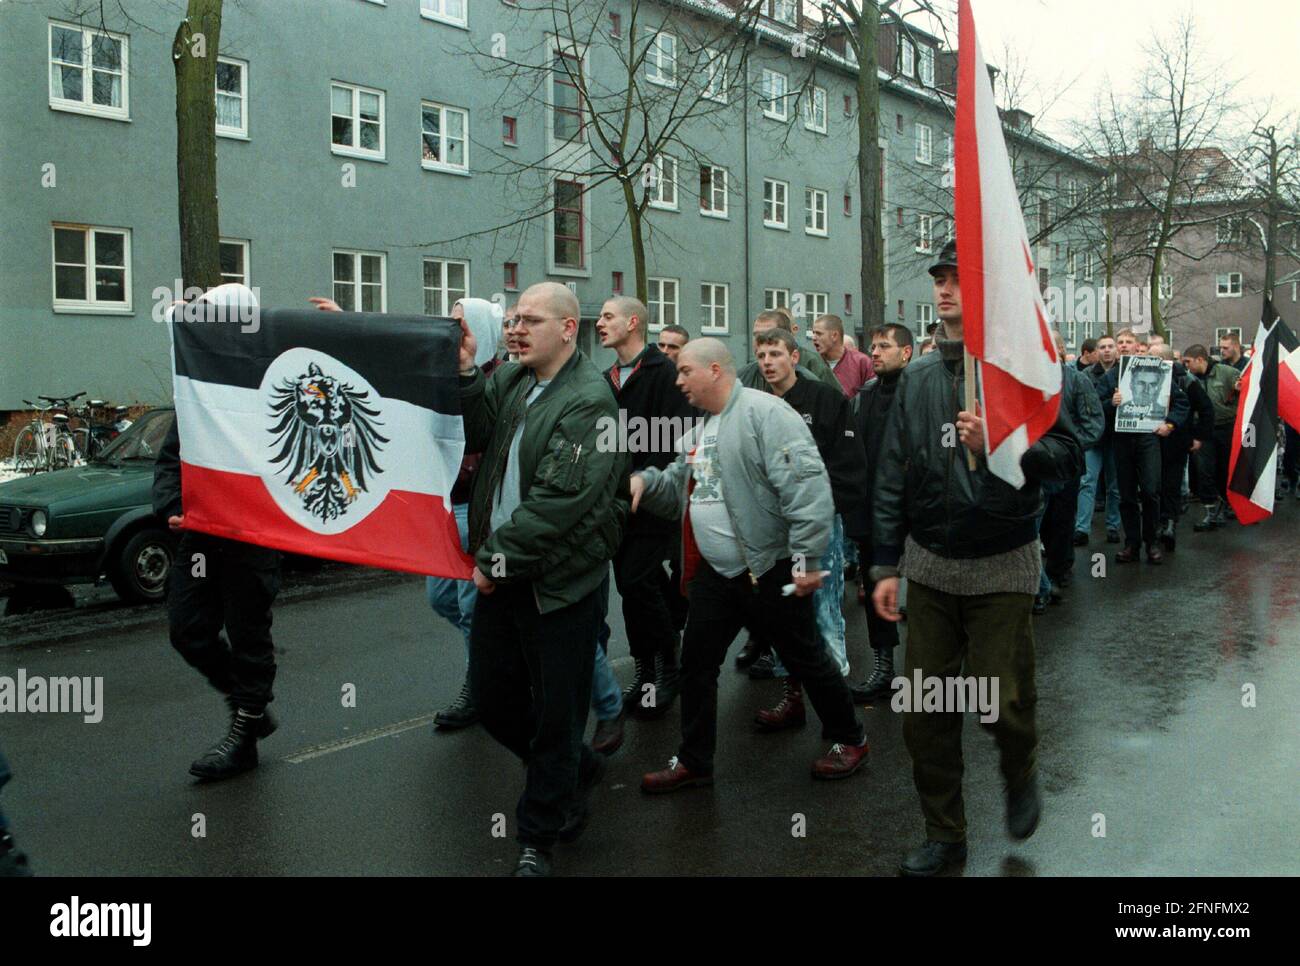 Berlino-Tegel, 05.12.1998, NPD marciò di fronte alla prigione di Tegel, chiedendo il rilascio del funzionario della NPD Frank Schwerdt, che sta servendo tempo a Tegel per incitamento della gente, tra le altre cose, [traduzione automatizzata] Foto Stock